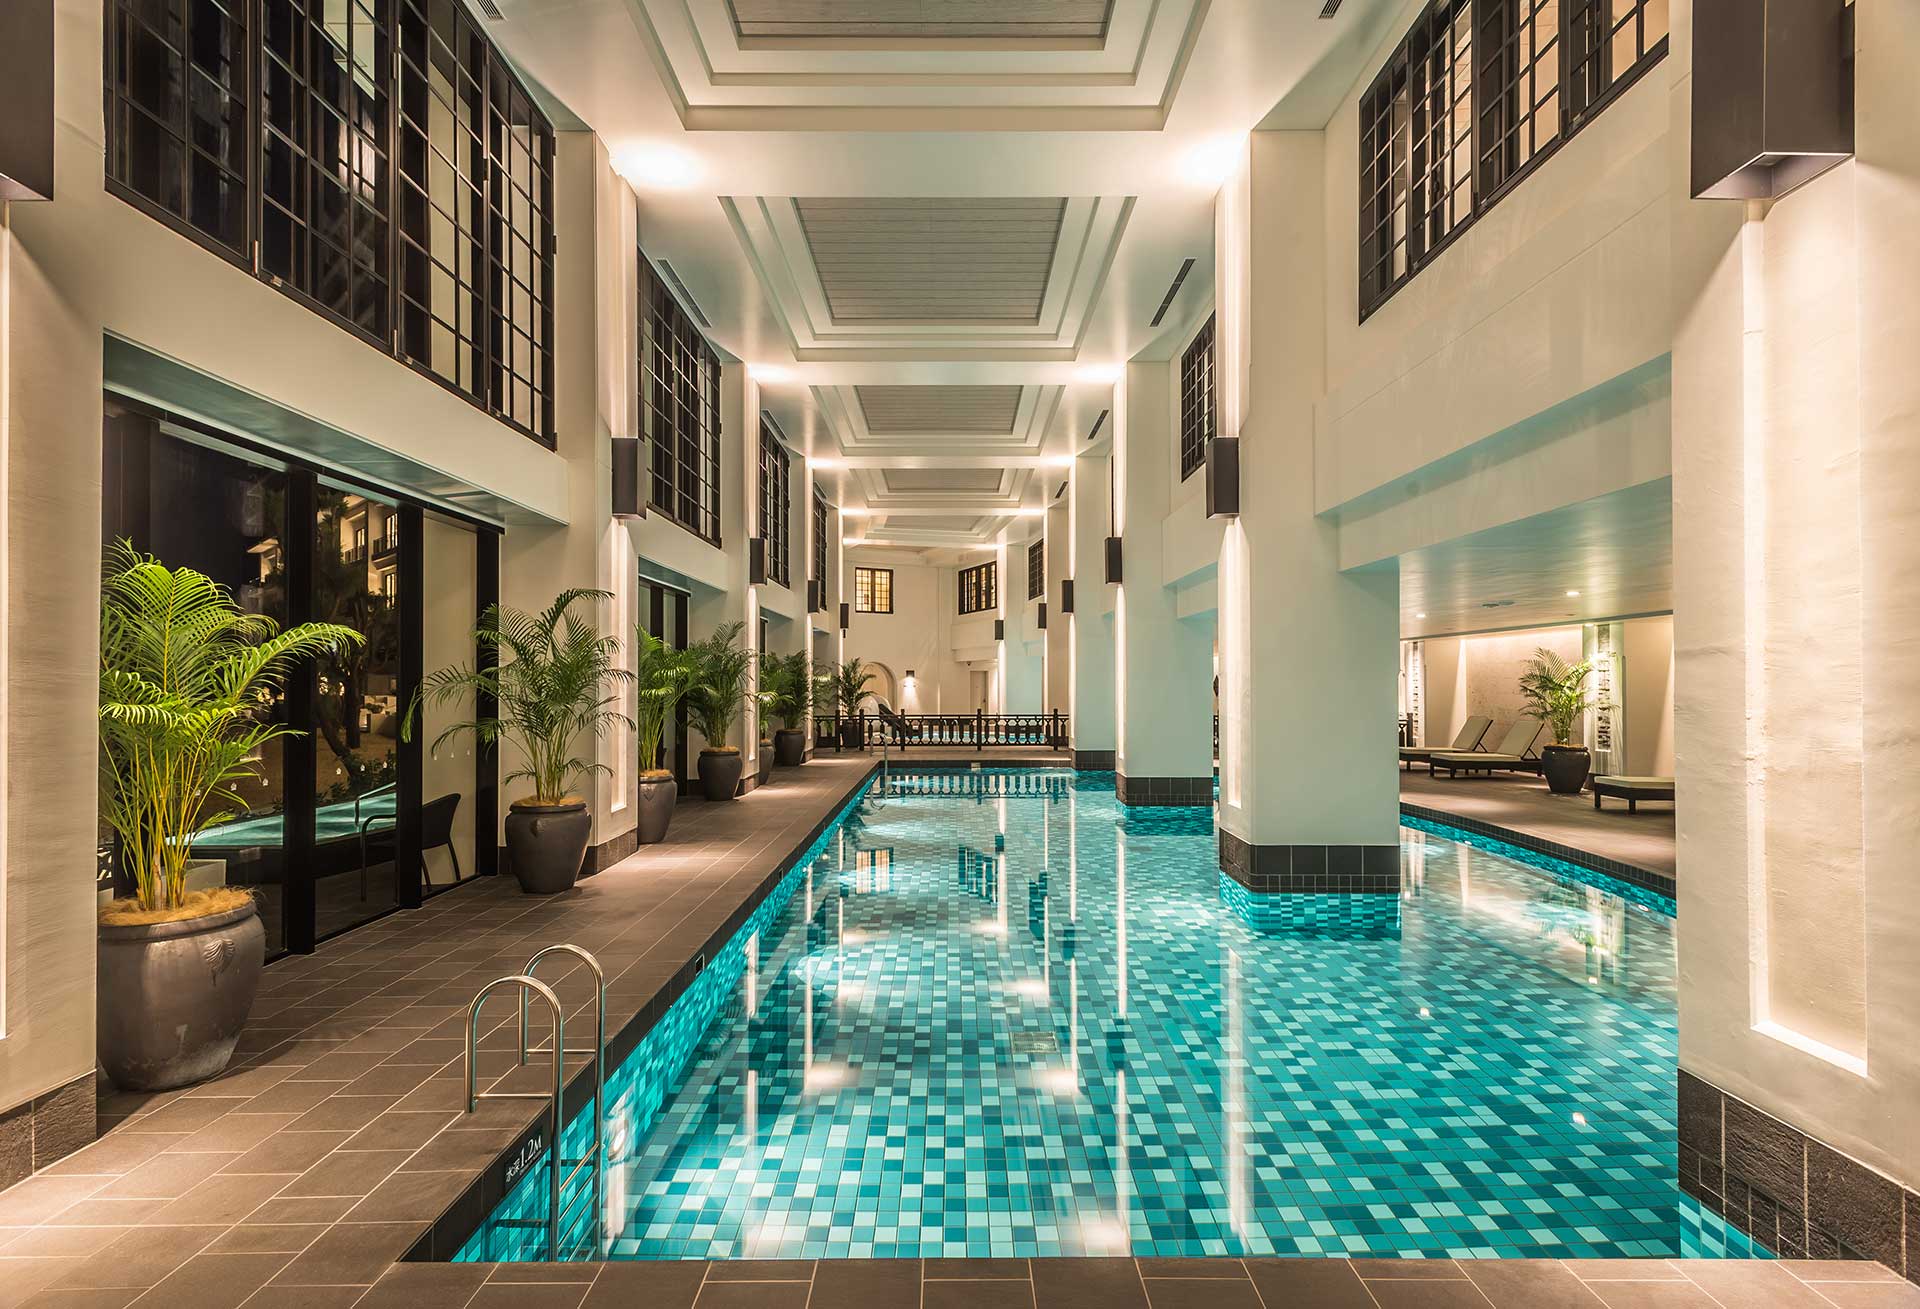 冬の沖縄でも泳げる 室内プール 温水プールが楽しめるホテル10選 Joyたび Jtb